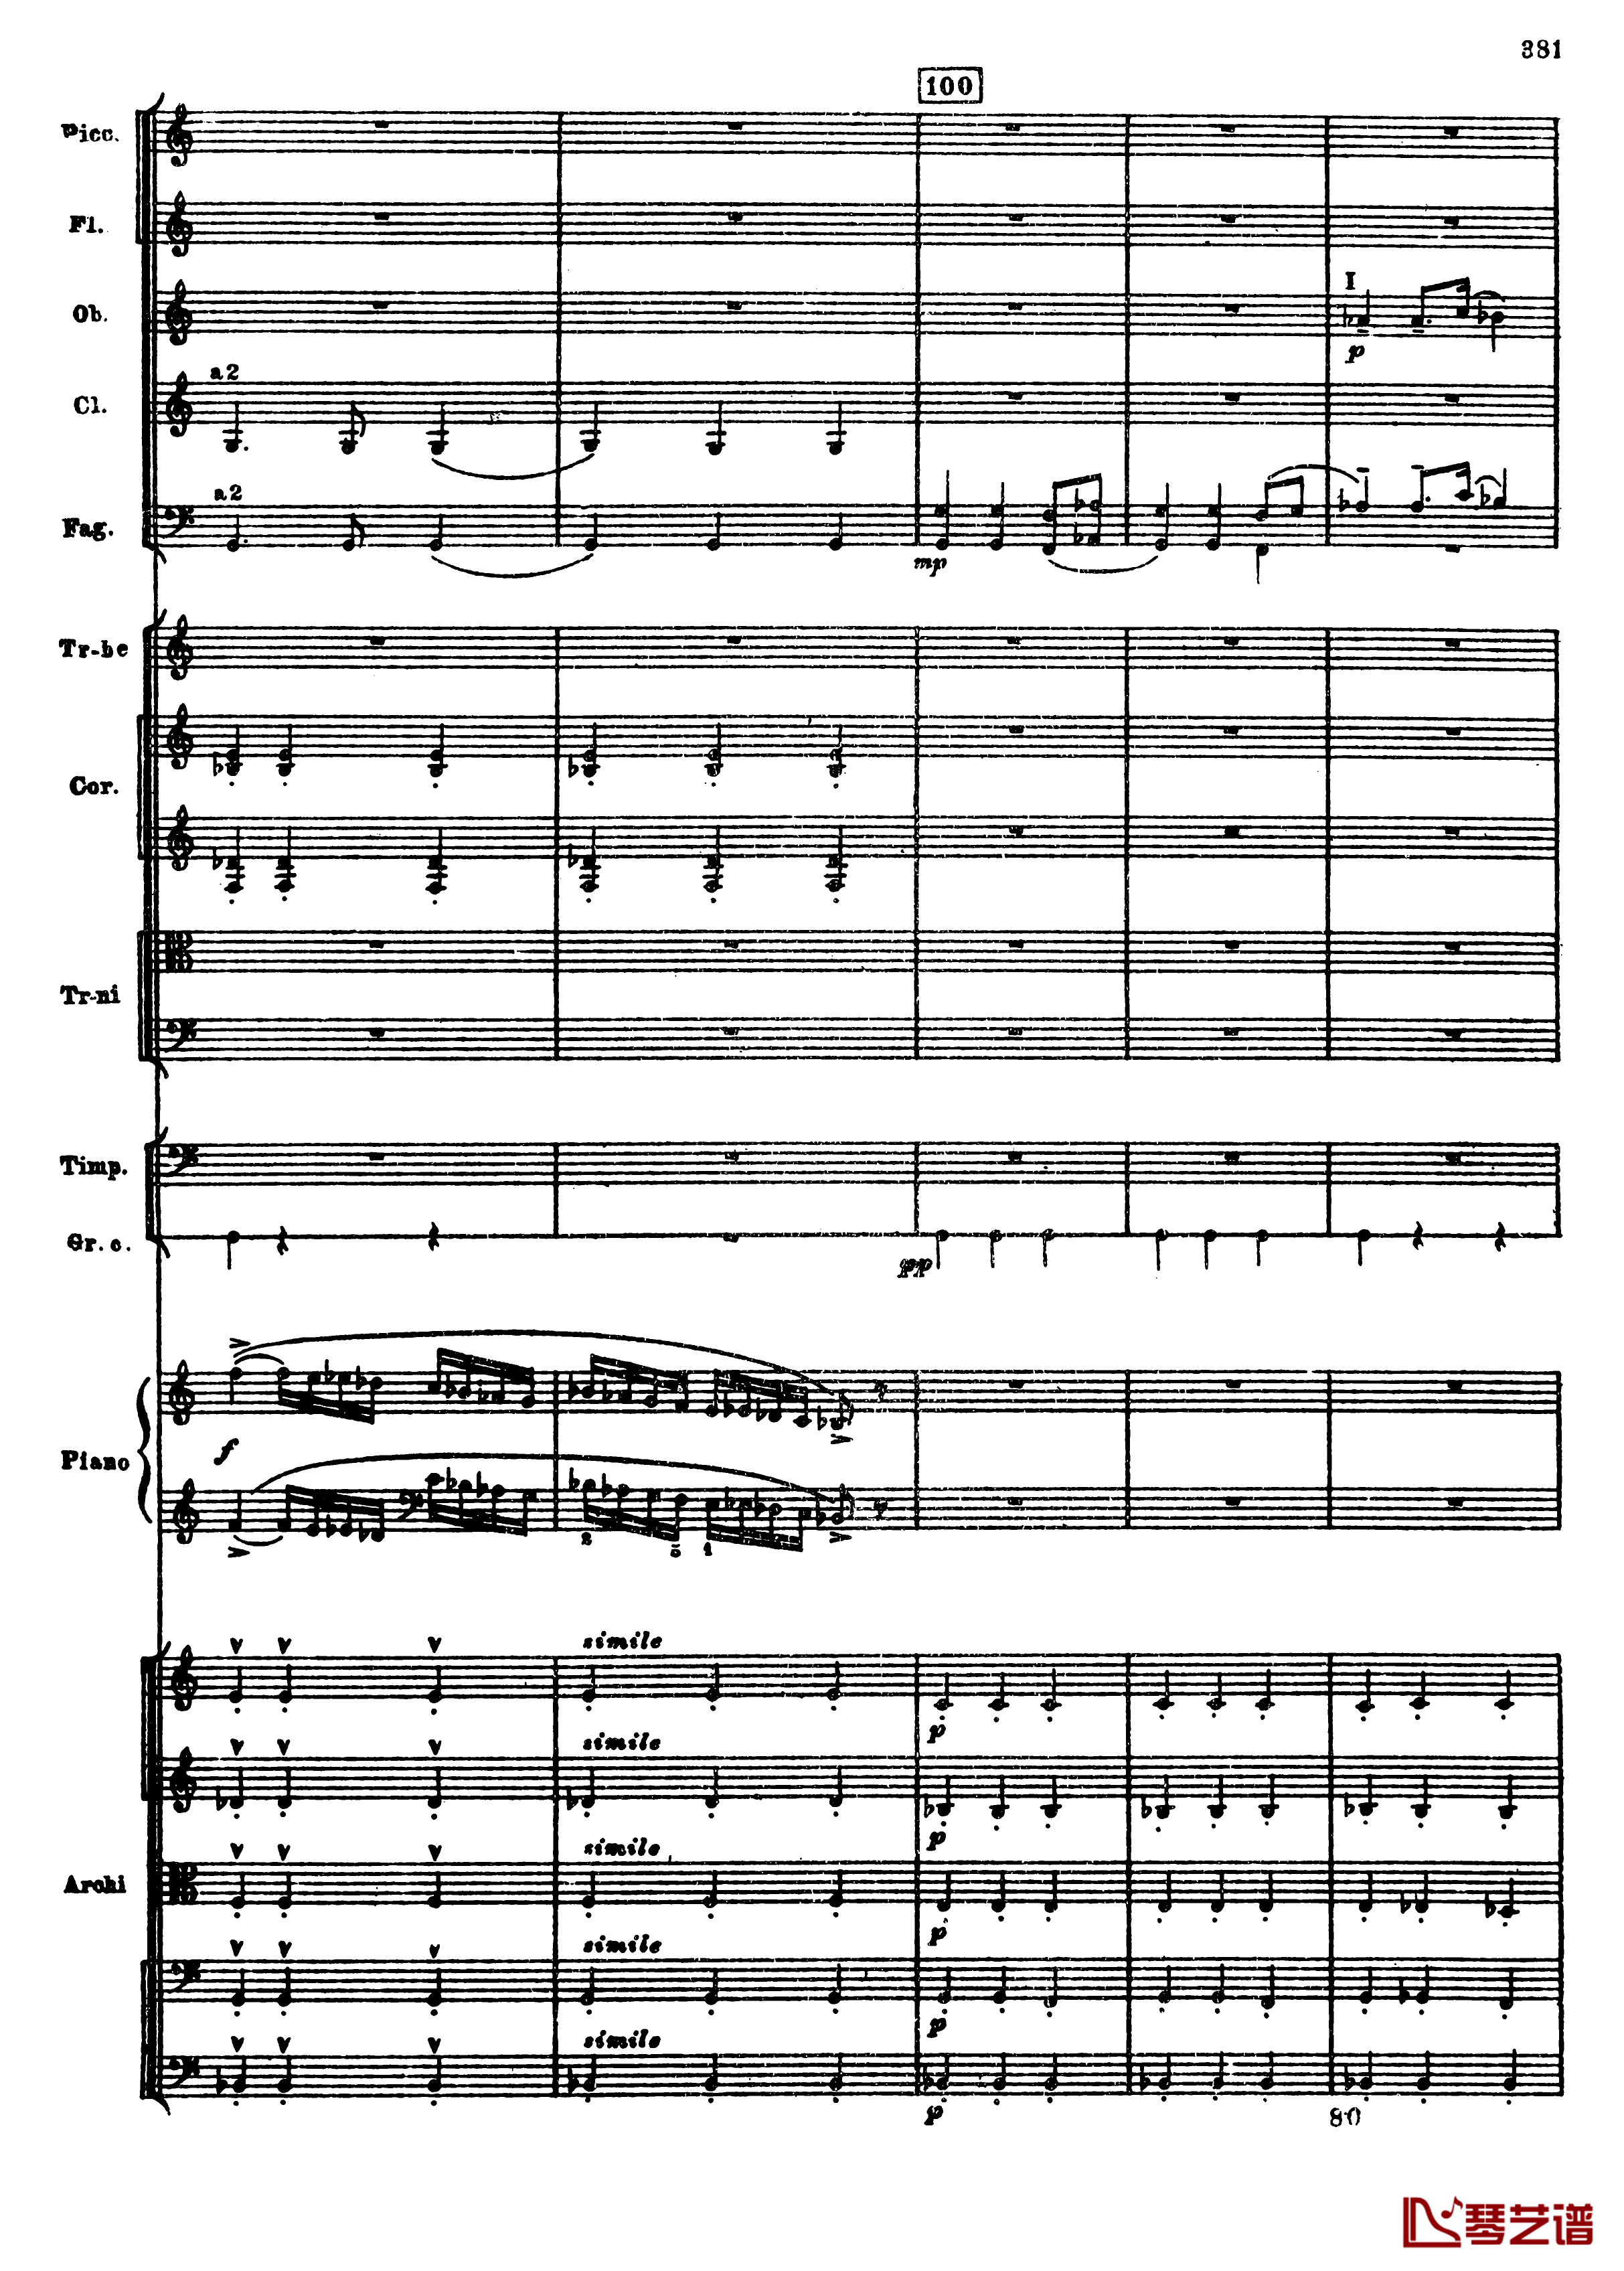 普罗科菲耶夫第三钢琴协奏曲钢琴谱-总谱-普罗科非耶夫113